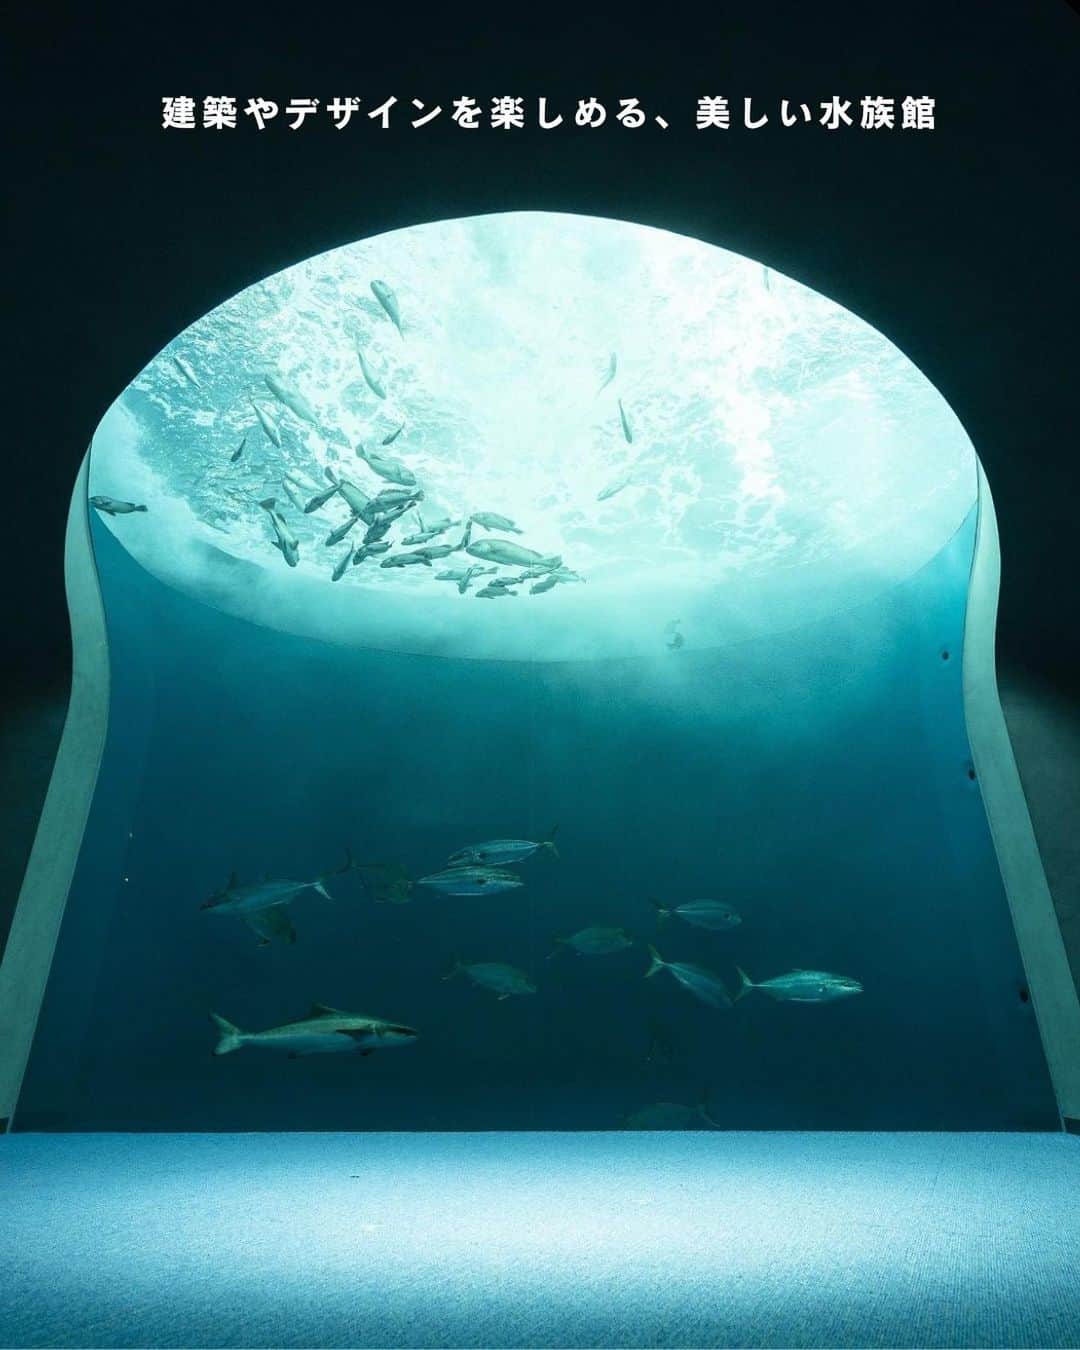 ELLE DECOR JAPANのインスタグラム：「建築やデザインを楽しめる、美しい水族館をご紹介。  1-2...AQUARIUM×ART átoa／兵庫県・神戸市 2021年にオープンしたアクアリウムとアートを融合させた新感覚の水族館。テーマ性の高い展示が楽しめるうえ、館内は思わず撮影したくなるような映えスポットばかり。  3-4...AOAO SAPPORO／北海道・札幌市 2023年7月、札幌の中心地にオープン。ペンギンなどの生物展示に加えて、バックヤードの公開やデジタルアートなど、様々なアプローチで水辺の生物の魅力を伝えている。  5-6...四国水族館／香川県・綾歌郡 瀬戸内海を再現した展示スペースや、夕焼けの景色をバックにイルカが泳ぐ絶景など、周囲の自然と融合した四国らしさあふれる空間が楽しめる。  7-8...上越市立水族博物館 うみがたり／新潟県・上越市 2018年にオープン。日本海に面した立地を生かした展示や空間づくりが魅力で、海の生き物を鑑賞しながら、雄大な自然も体験できる大型の水族館。  #水族館 #デジタルアート #AQUARIUMARTátoa #AOAOSAPPORO  #四国水族館 #上越市立水族博物館うみがたり #AQUARIUM #美しい建築 #建築好き #水族館巡り #水族館フォト #お出かけスポット」